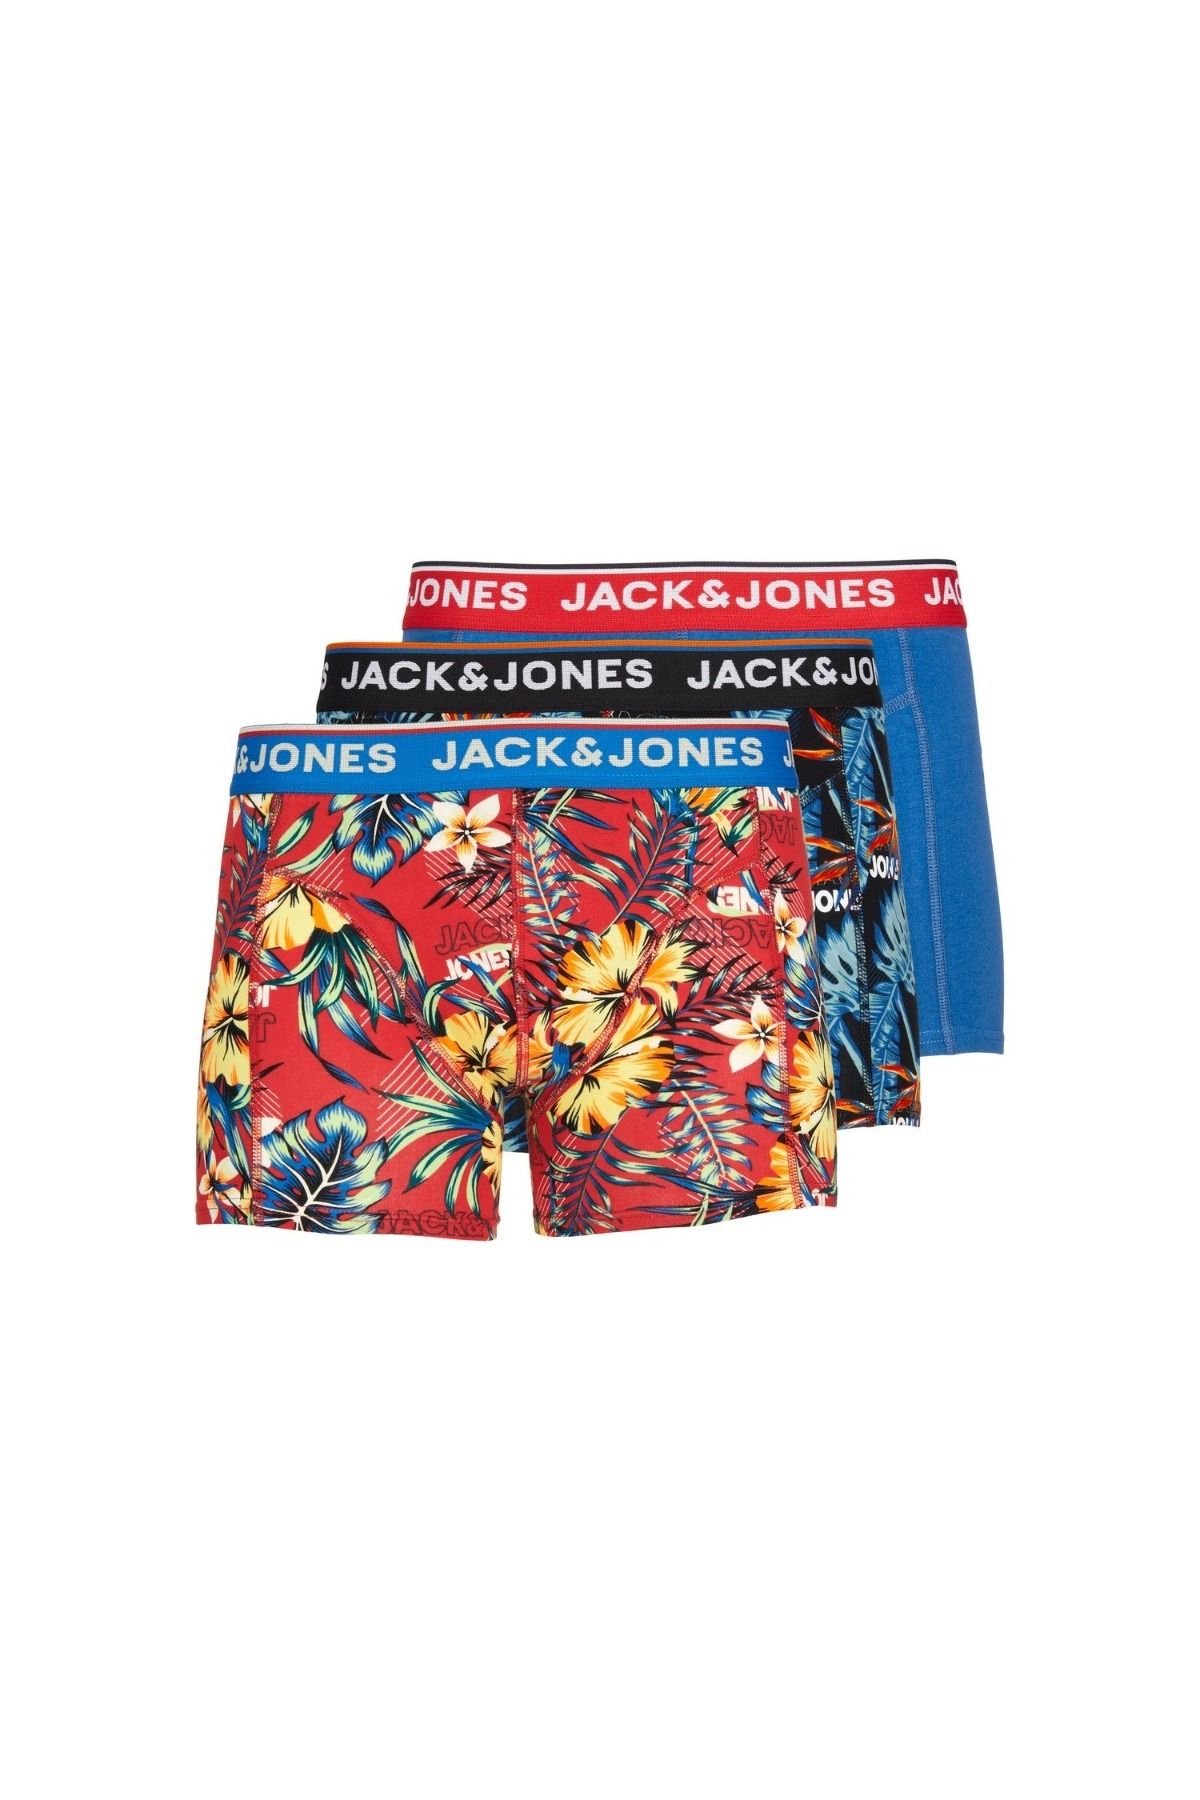 Jack & Jones Jack&jones Azores 3 Pack Erkek Siyah Iç Çamaşır